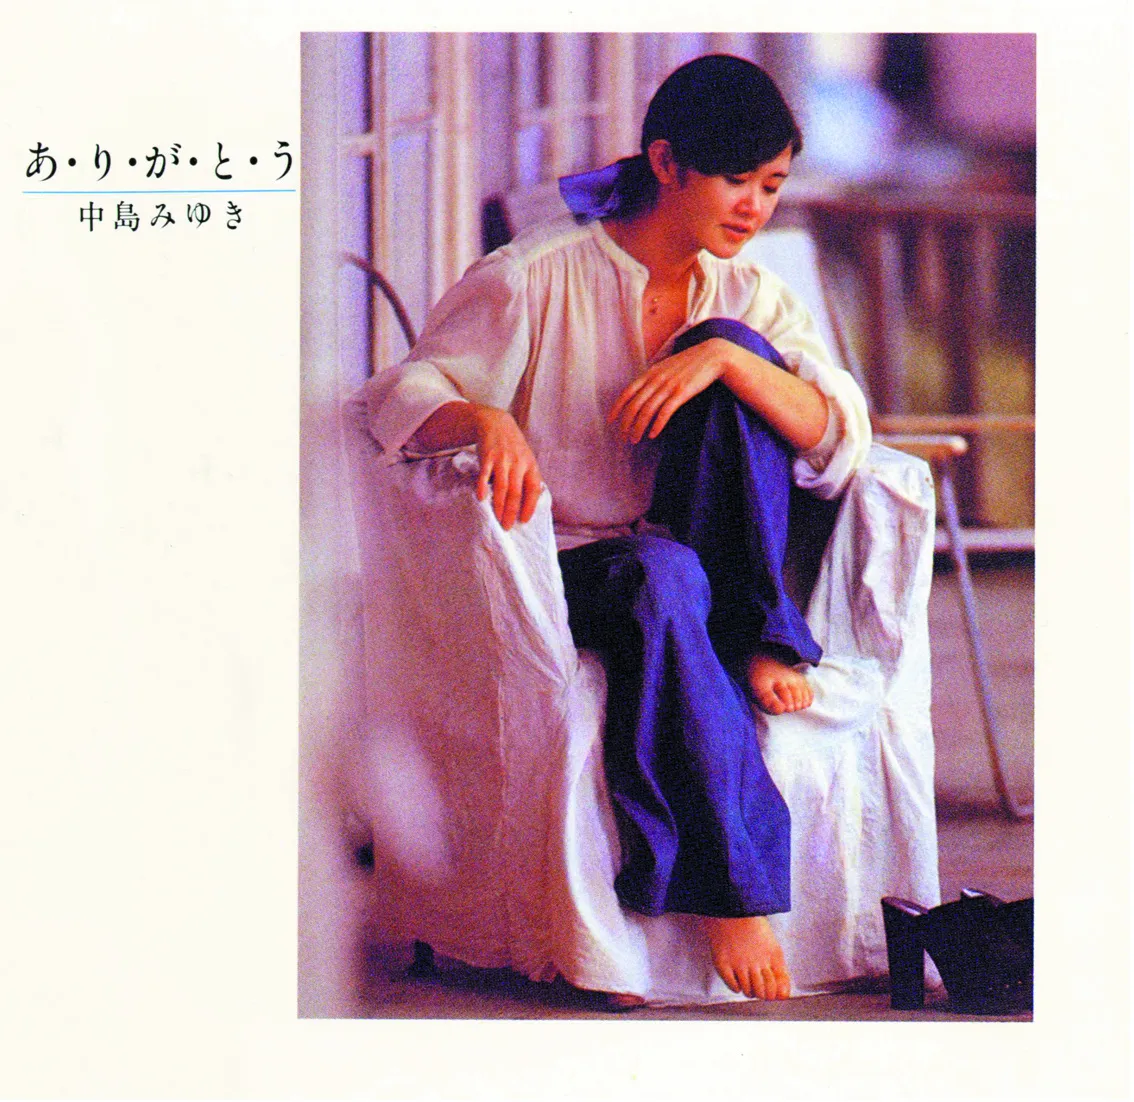 中島みゆきの3rdアルバム『あ・り・が・と・う』にはキーボードに坂本龍一、ベースに吉田健らが参加